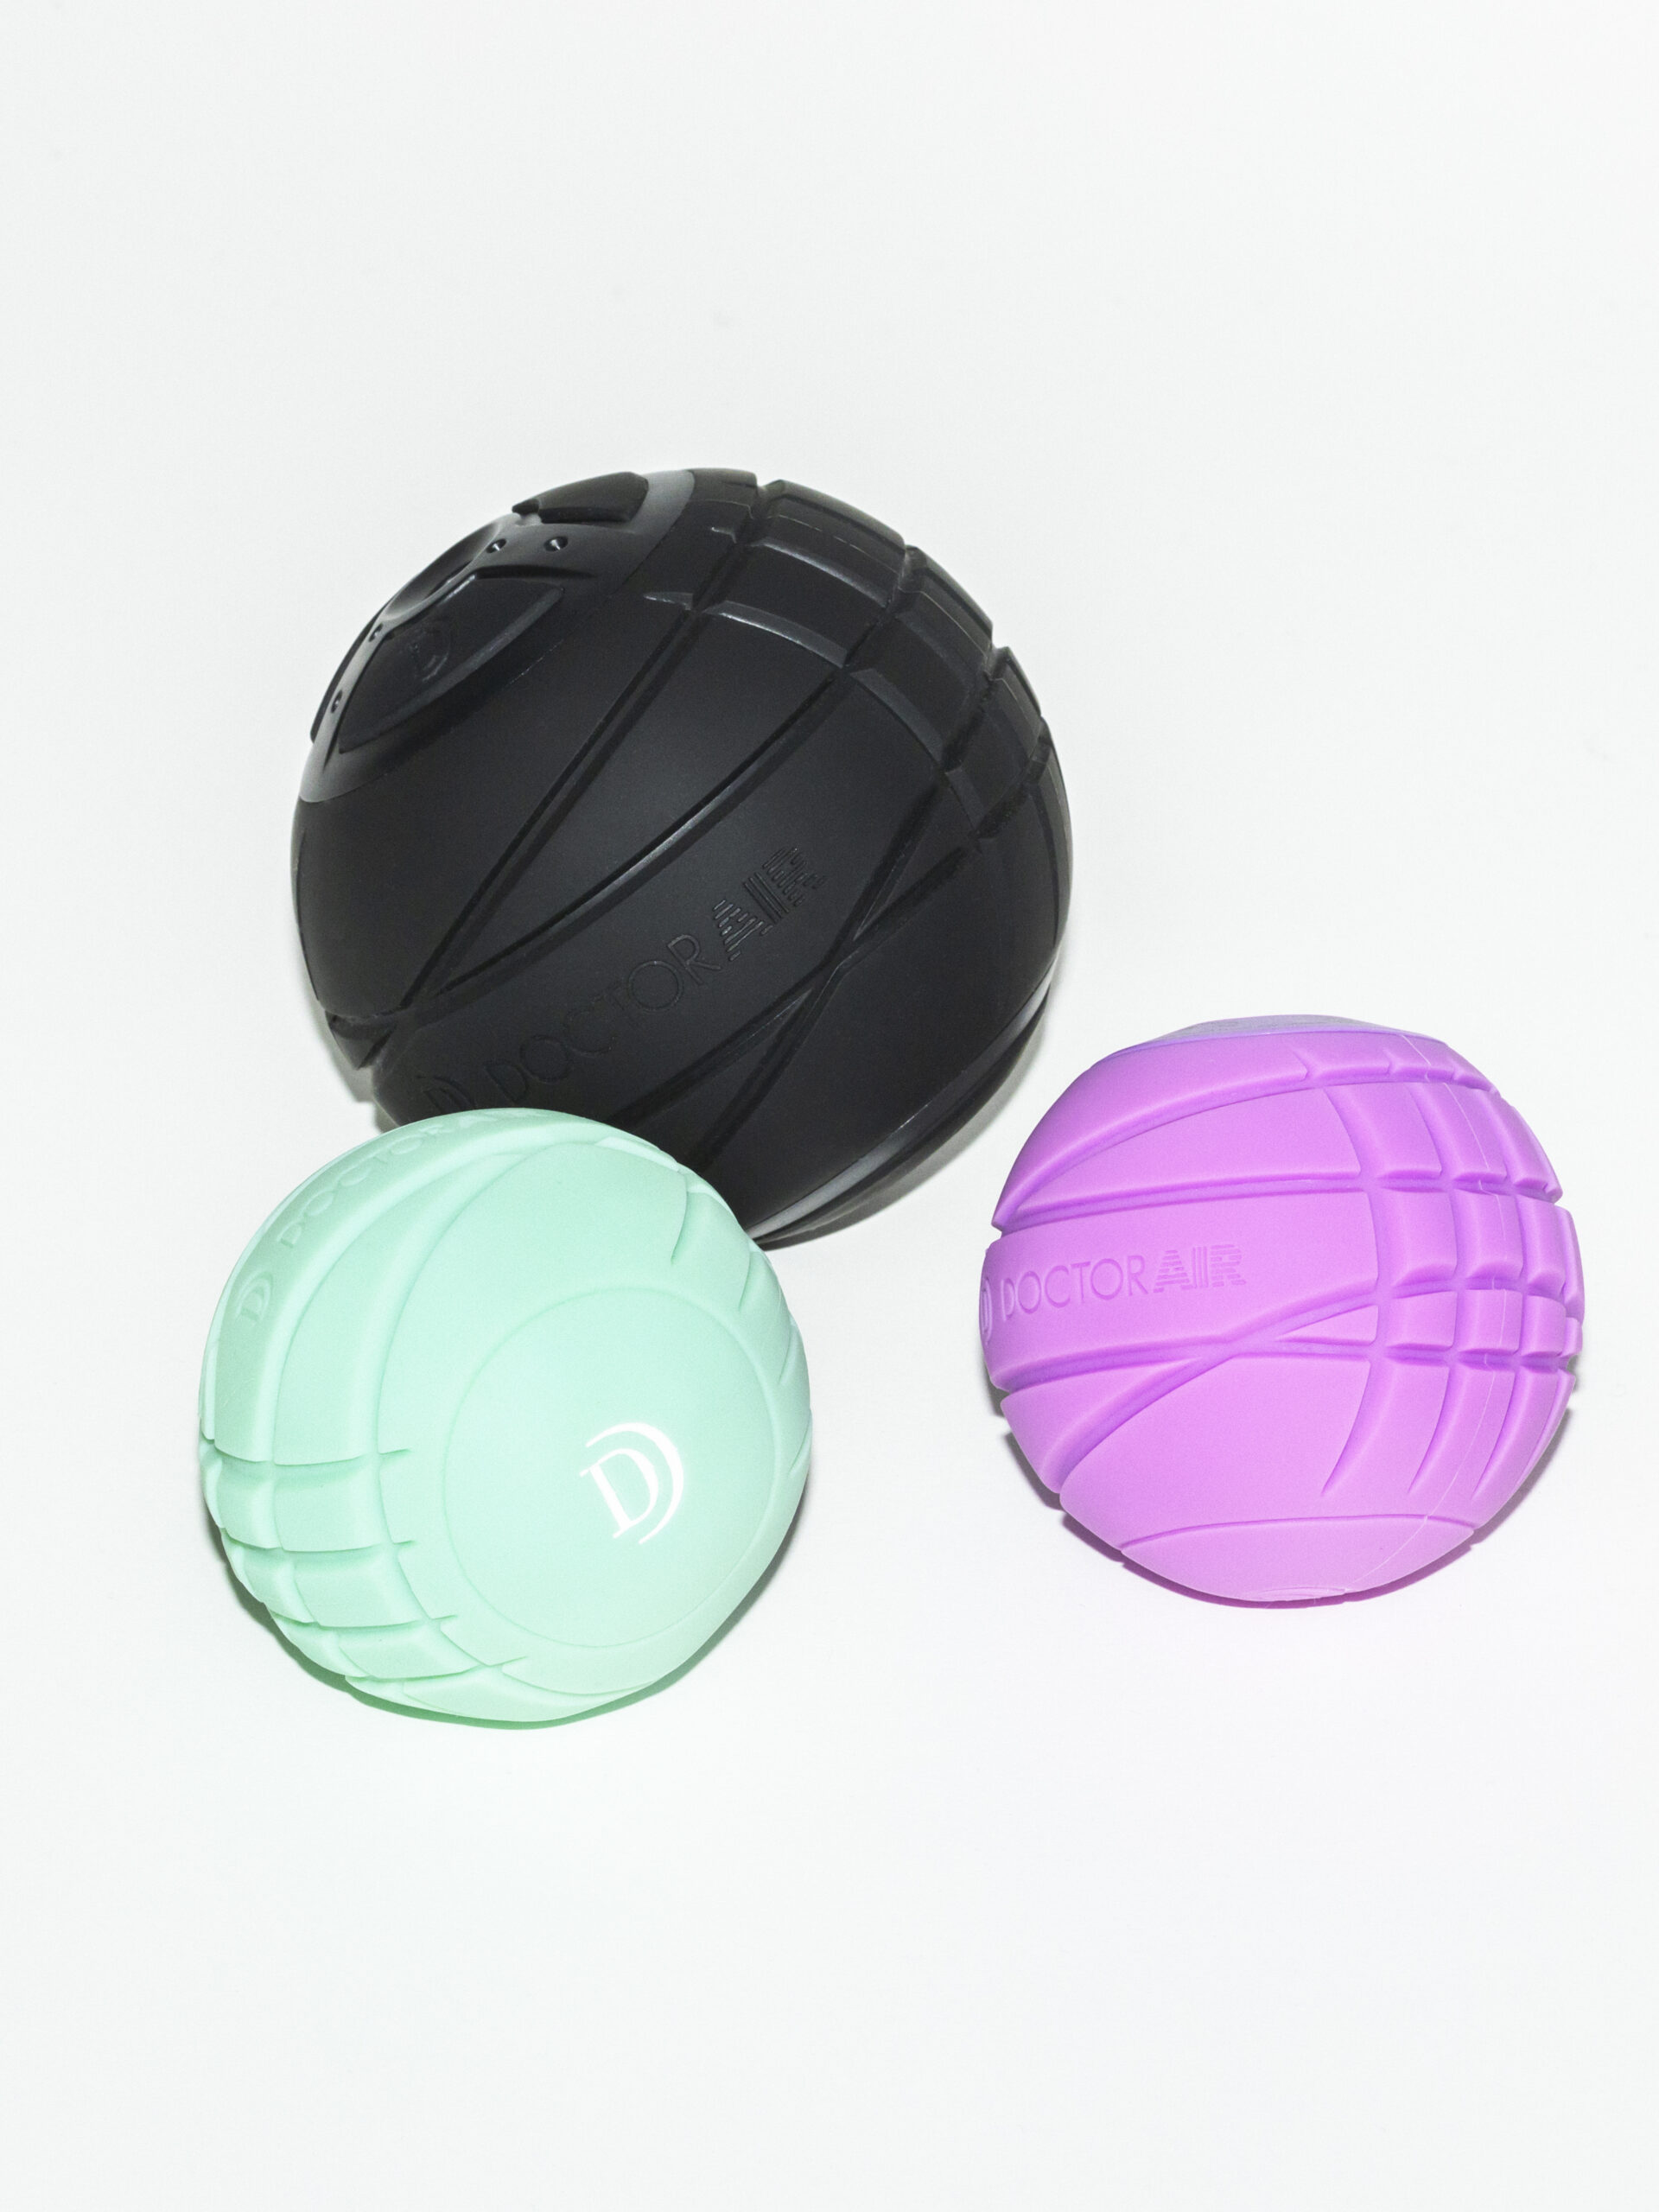 上から時計回りに、「ドクターエア」のストレッチサポート機器 “3Dコンディショニングボール” ¥12,800、“3Dコンディショニングボールスマート” 各¥9,800